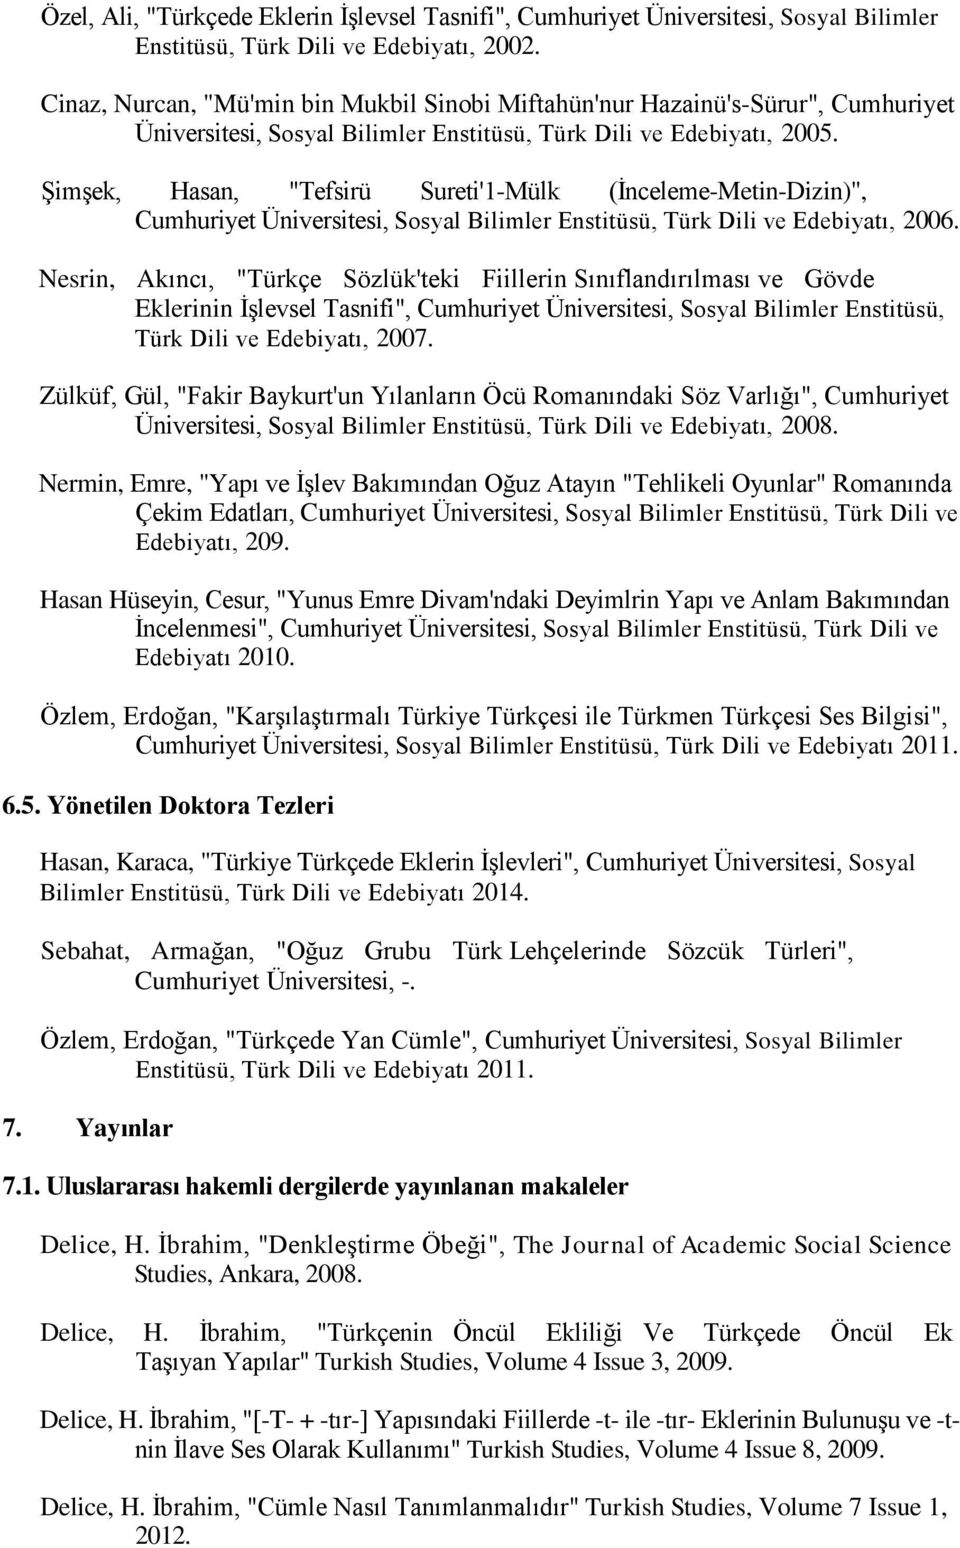 Şimşek, Hasan, "Tefsirü Sureti'1-Mülk (İnceleme-Metin-Dizin)", Cumhuriyet Üniversitesi, Sosyal Bilimler Enstitüsü, Türk Dili ve Edebiyatı, 2006.